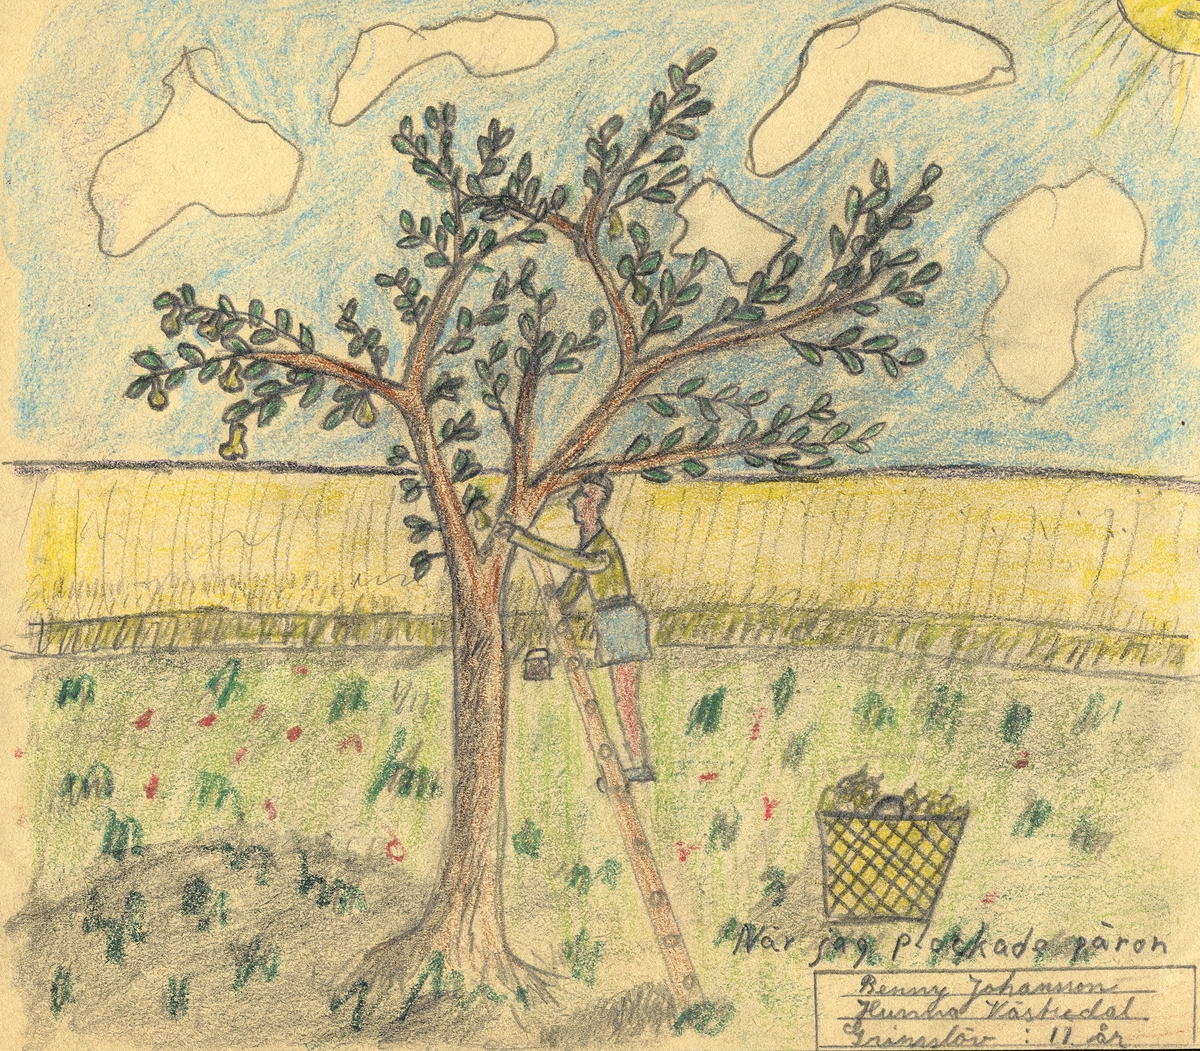 Barnteckning - akvarell.
"Plock".
När jag plockade päron. 

Benny Johansson, Torps skola, Grimslöv, 11 år. 

Inskrivet i huvudbok 1947.